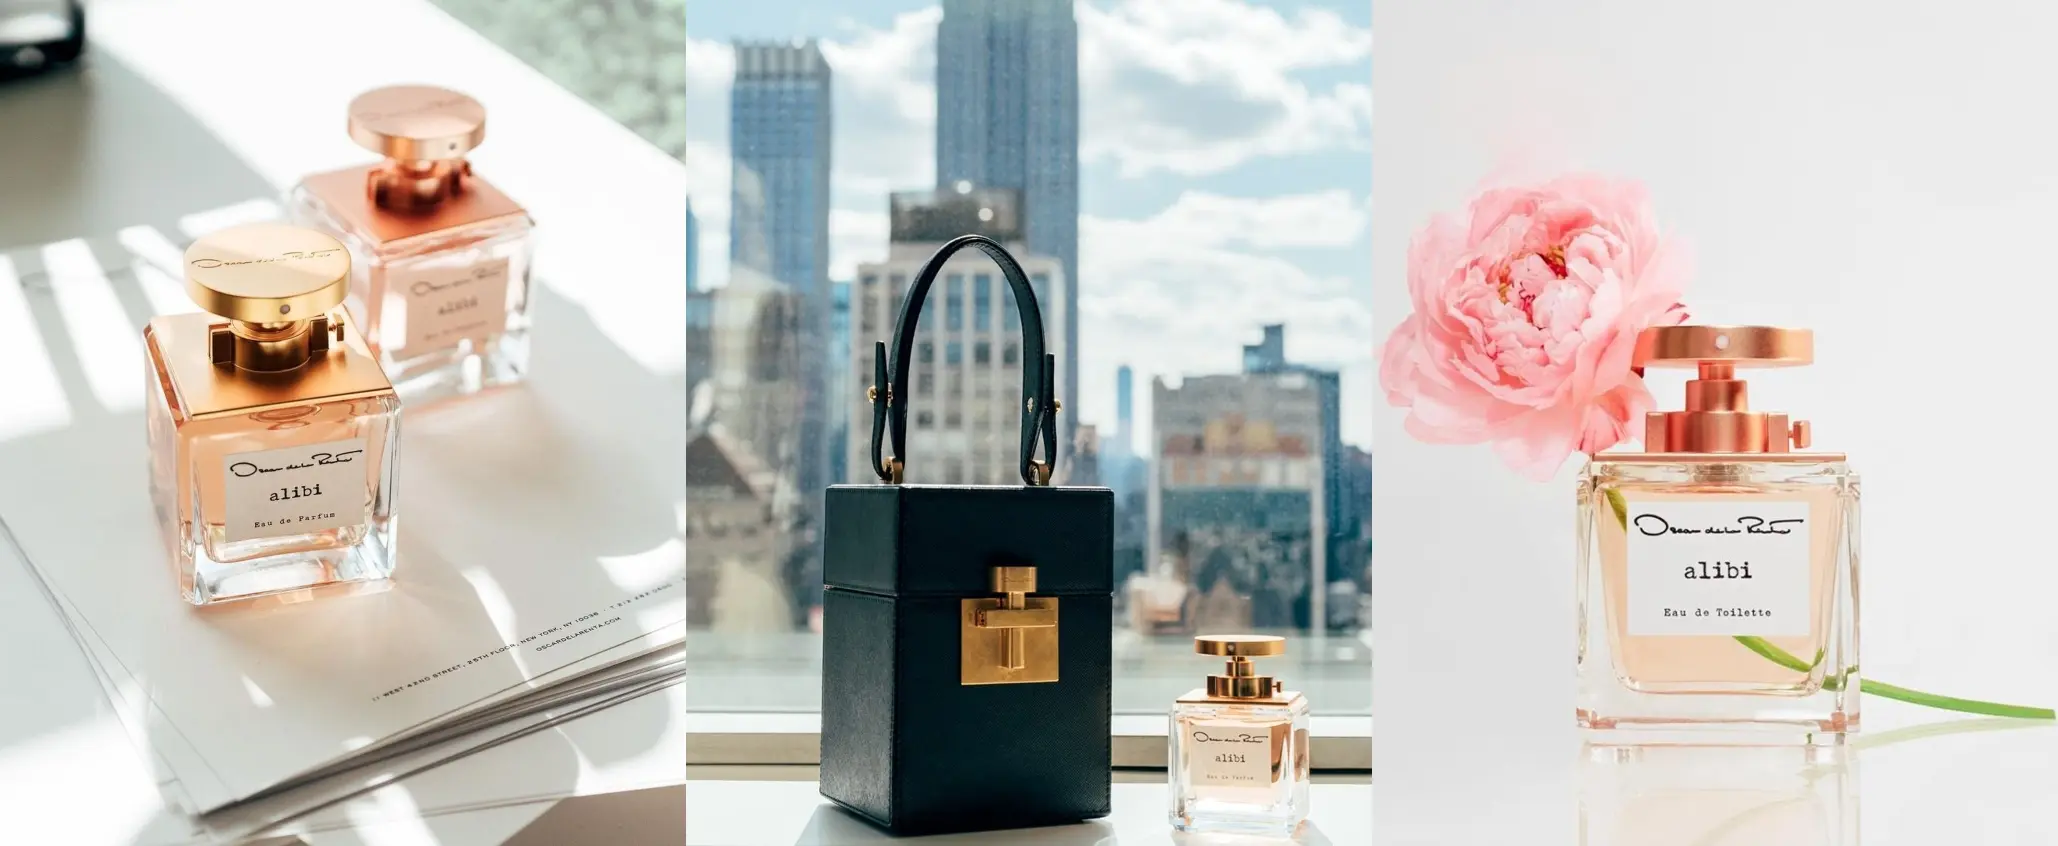 Oscar de la Renta presentó un nuevo perfume para mujeres en 2022